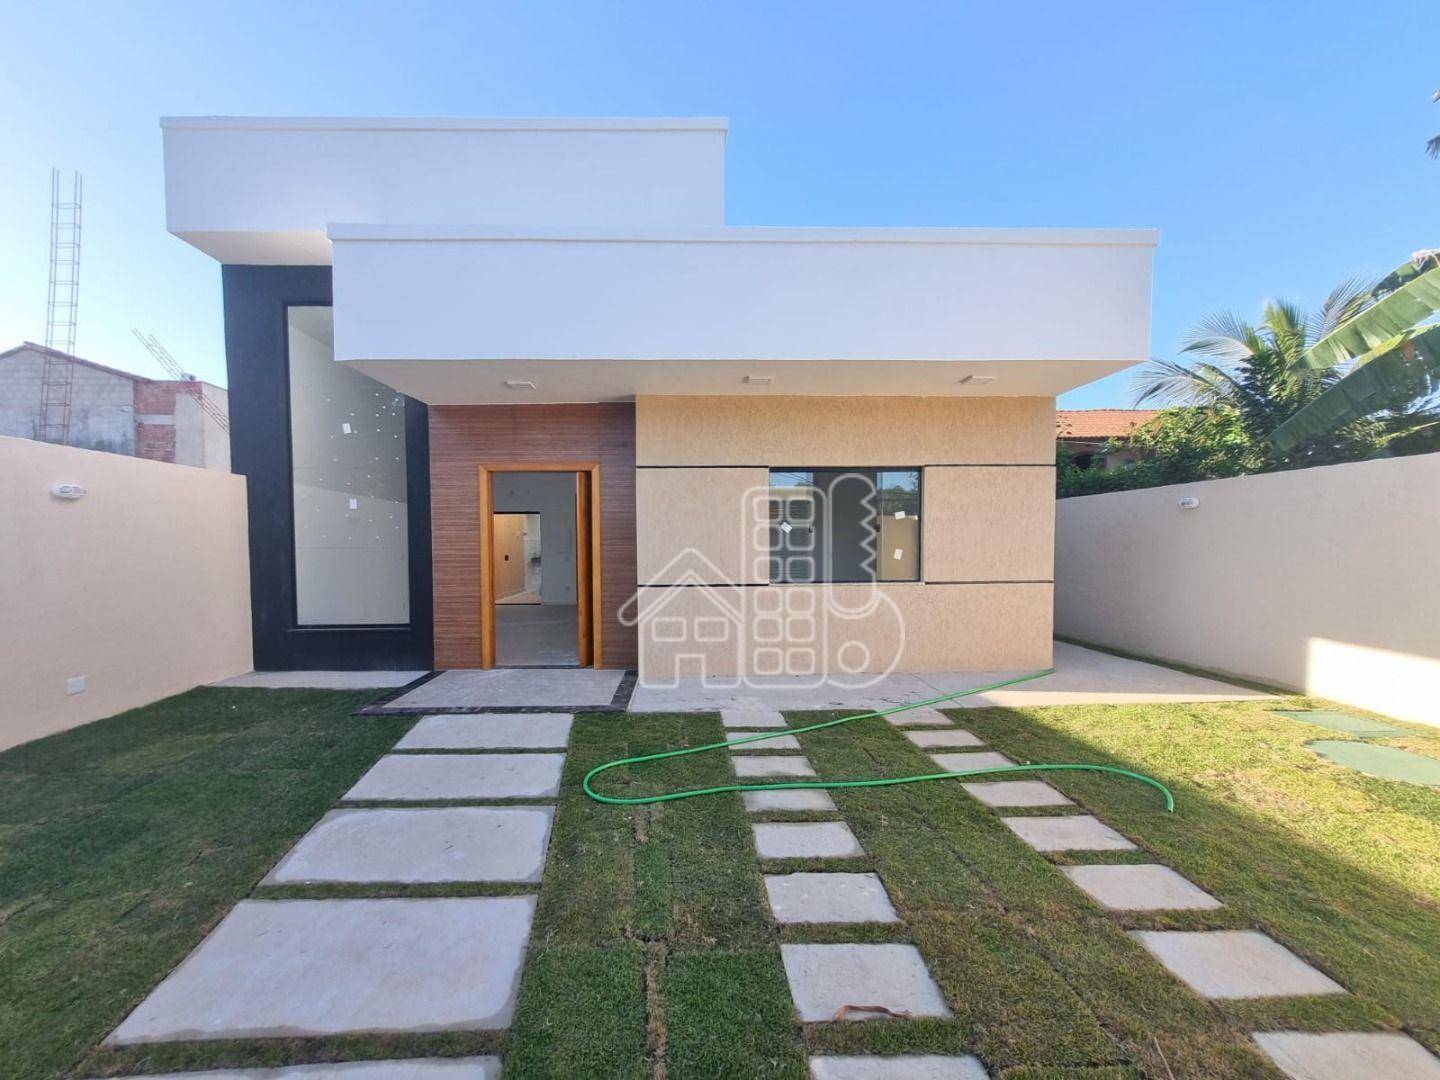 Casa com 3 dormitórios à venda, 116 m² por R$ 650.000,02 - Jardim Atlântico Oeste (Itaipuaçu) - Maricá/RJ